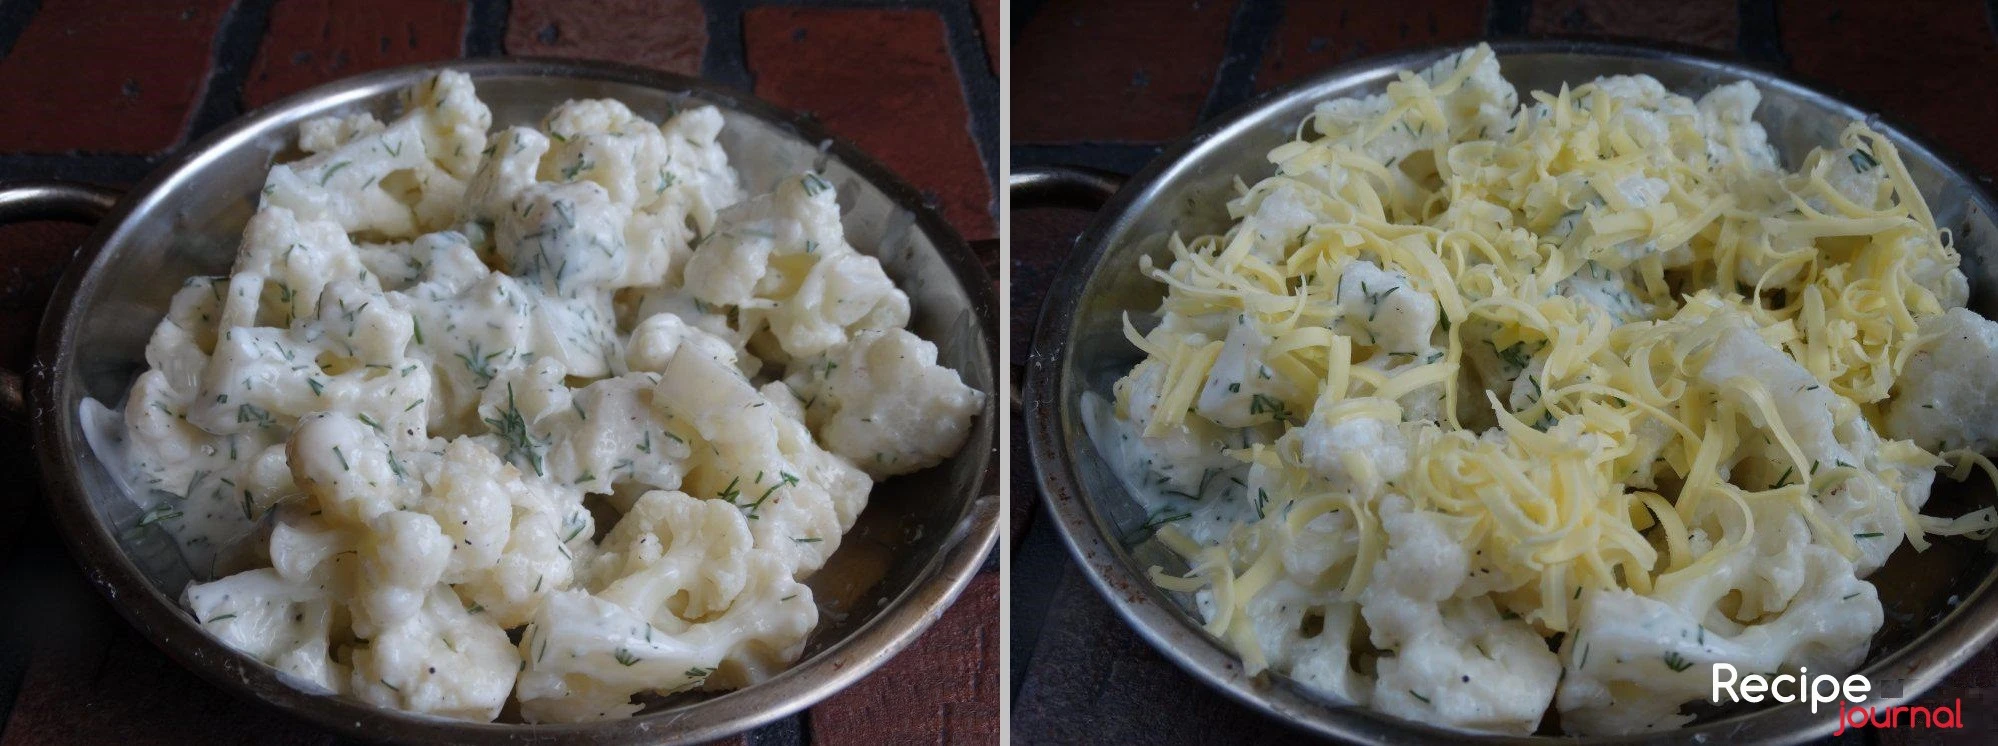 Выложить капусту в форму для запекания, посыпать тертым сыром и отправить в духовку, разогретую до 180<sup>о</sup>. Запекать 15 минут. Цветная капуста, запеченная в йогурте готова!